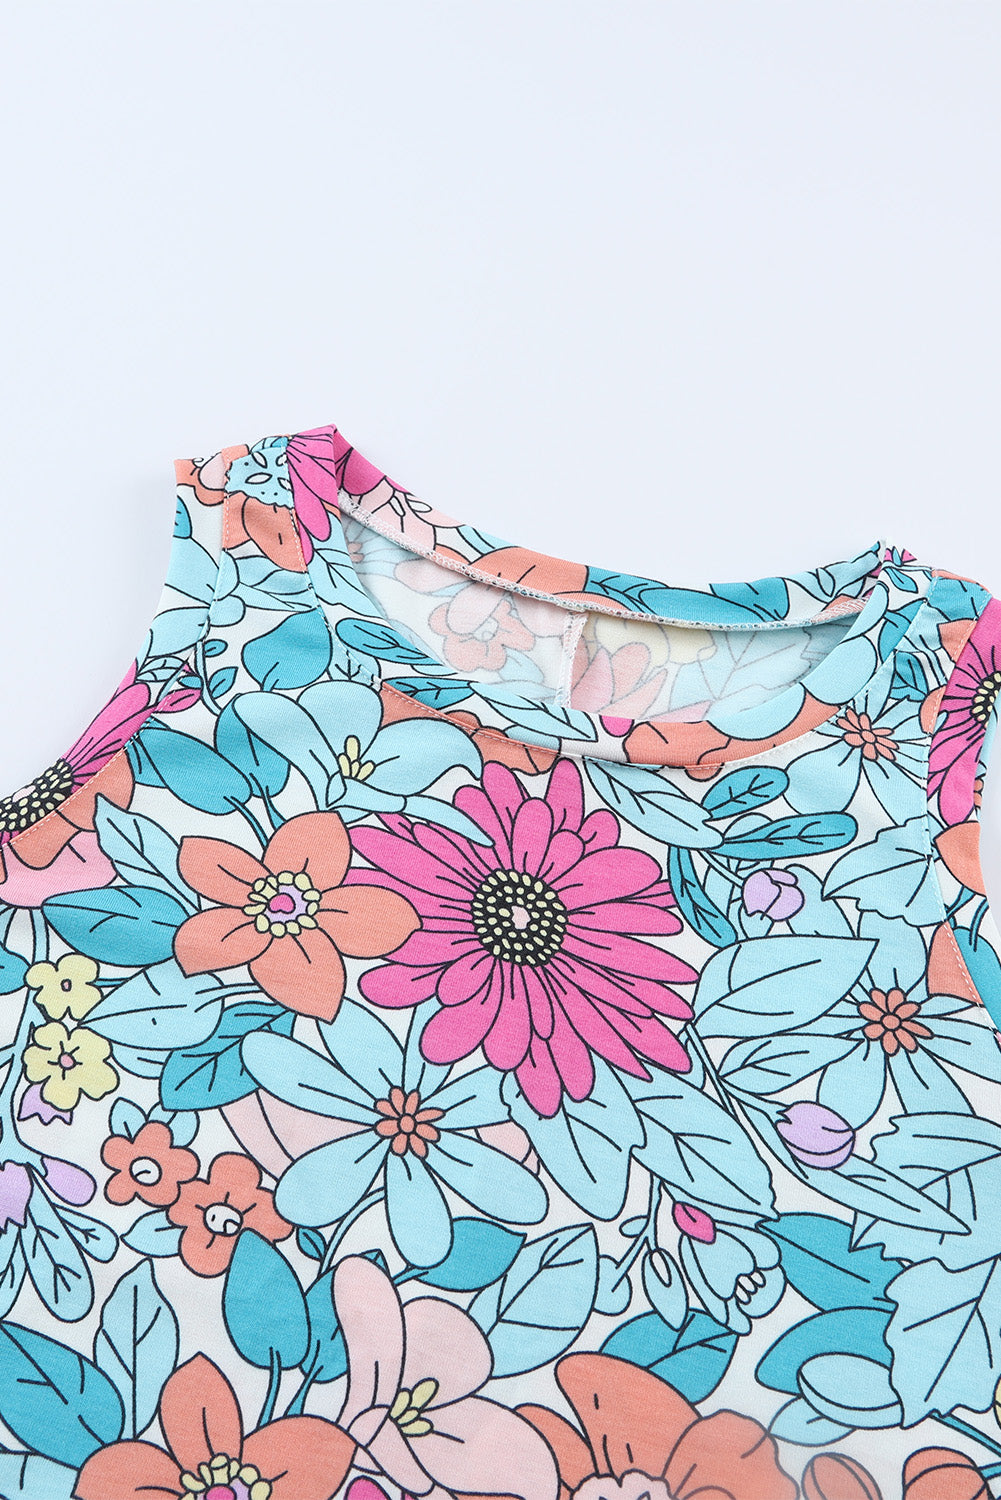 Mini-robe florale multicolore sans manches à col rond